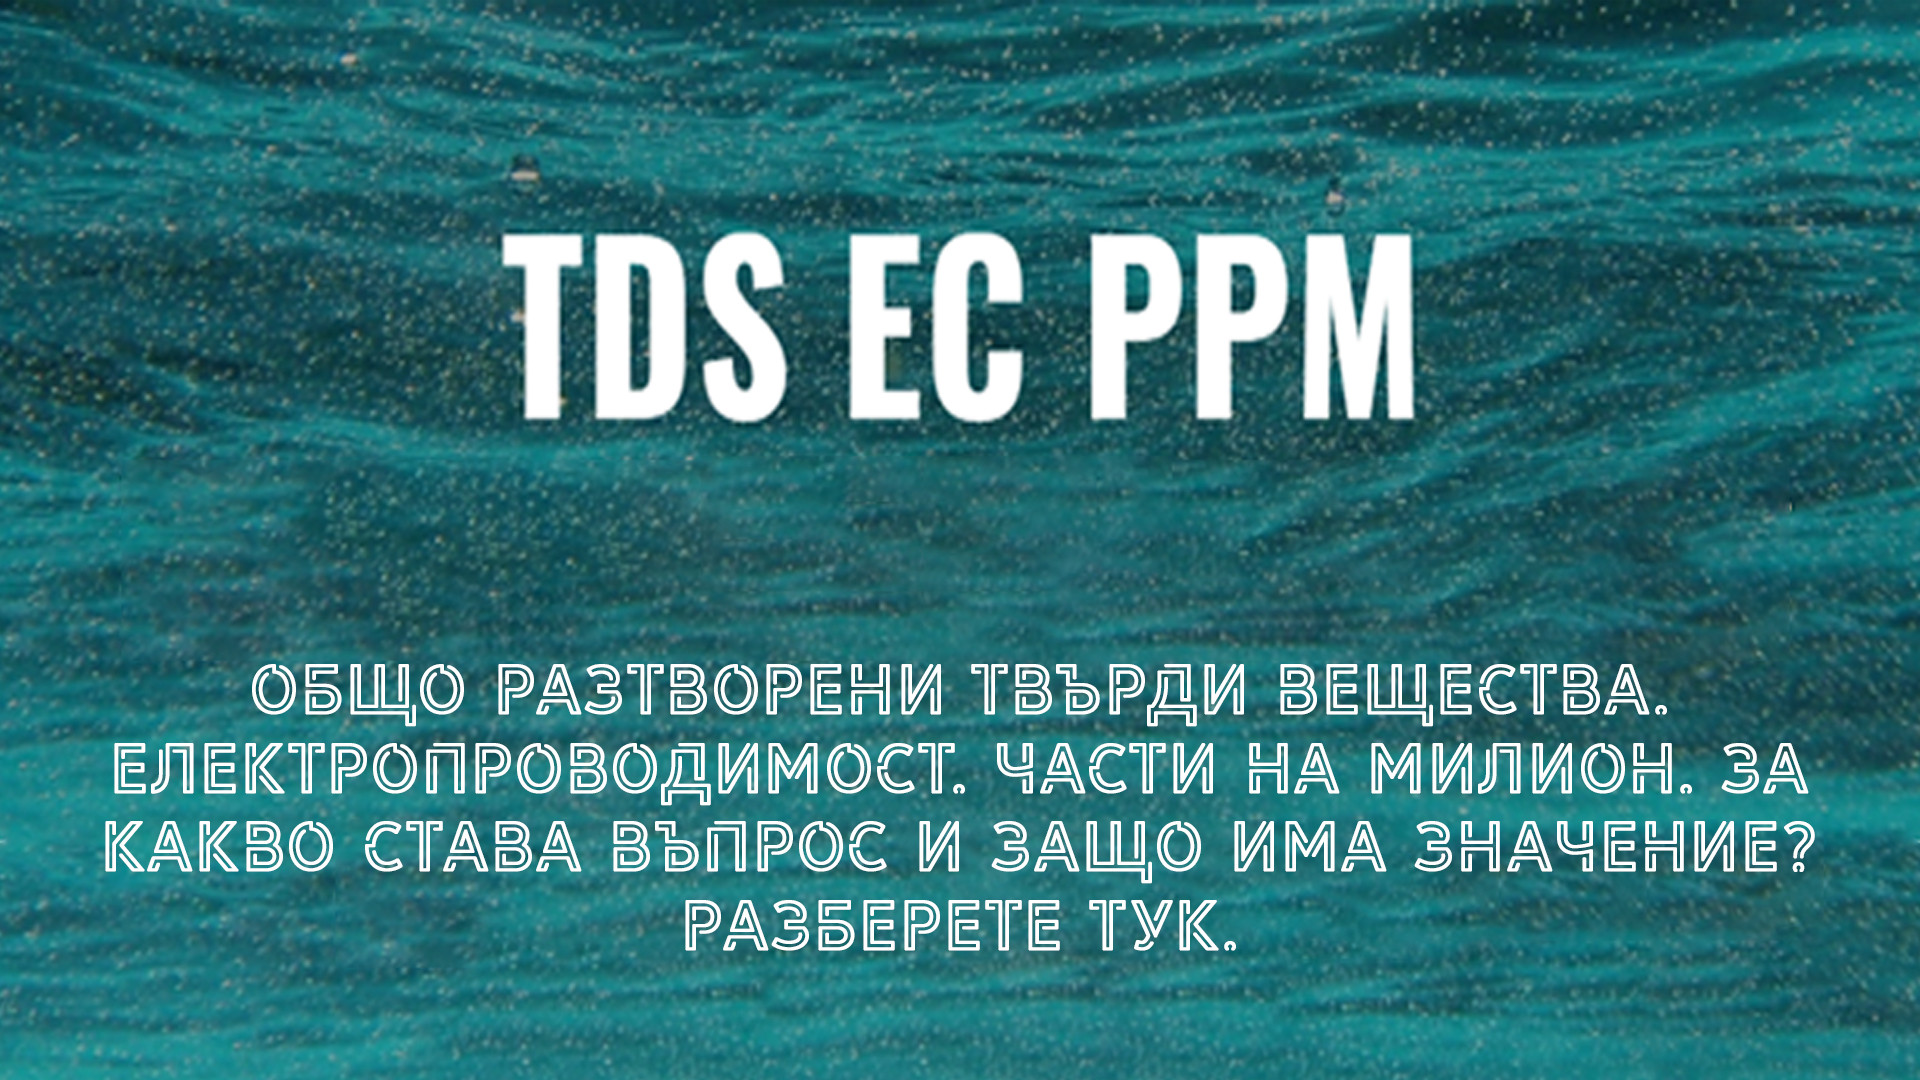 Въпроси относно TDS, EC и PPM 